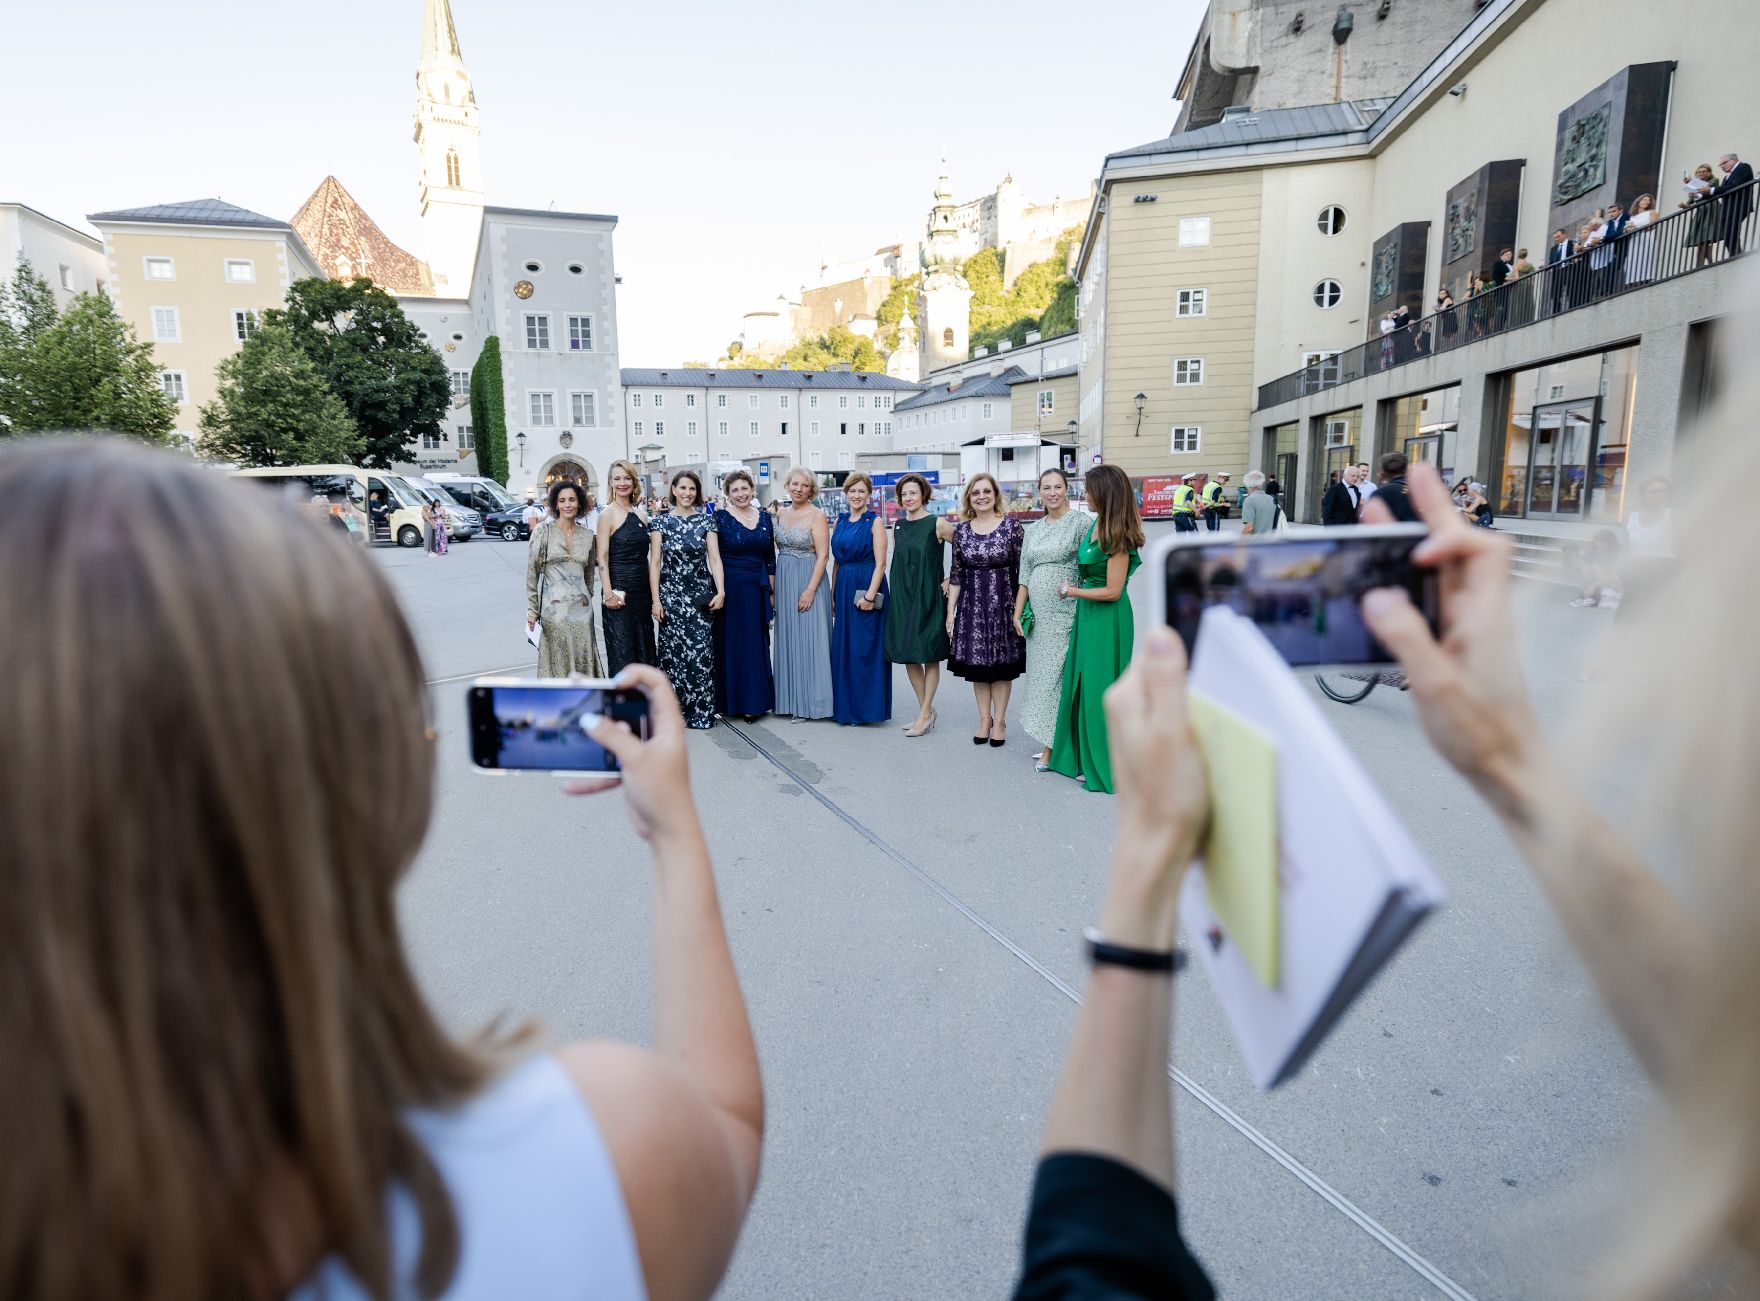 Am 4. August 2022 nahm Bundesministerin Karoline Edtstadler an der „The Next Generation is Female“ Konferenz in Salzburg teil. Im Bild bei den Salzburger Festspielen.